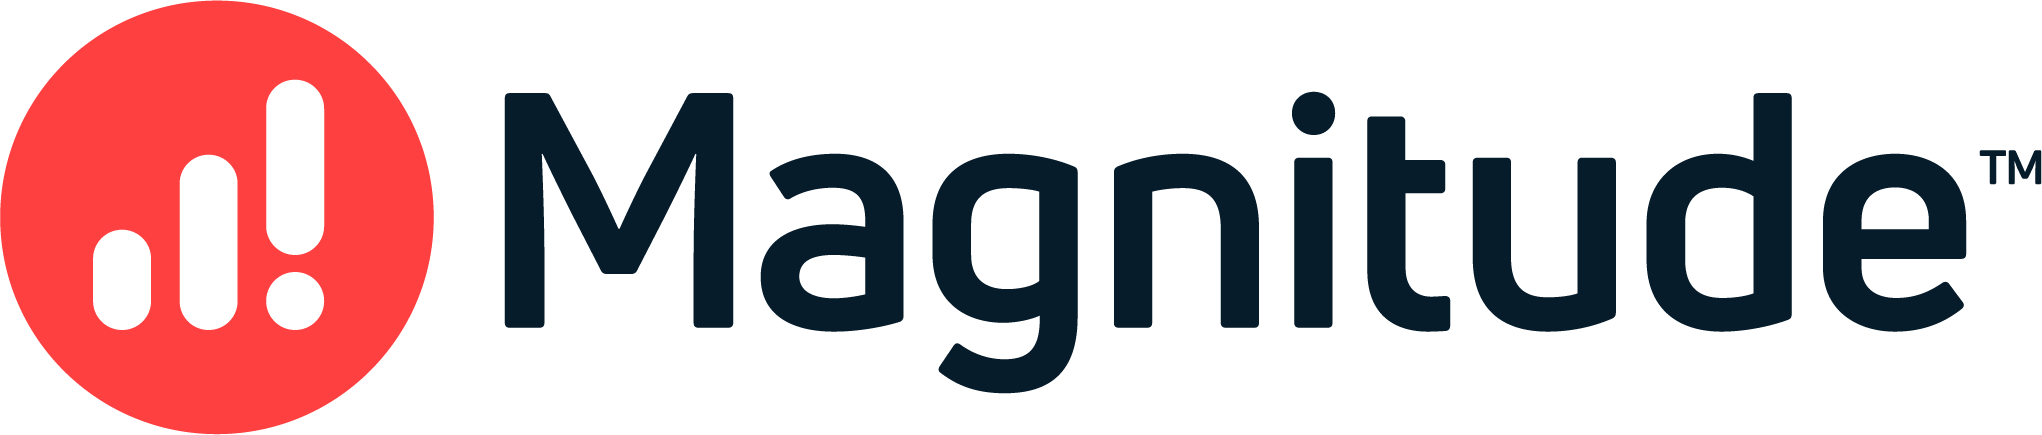 logo magnitude